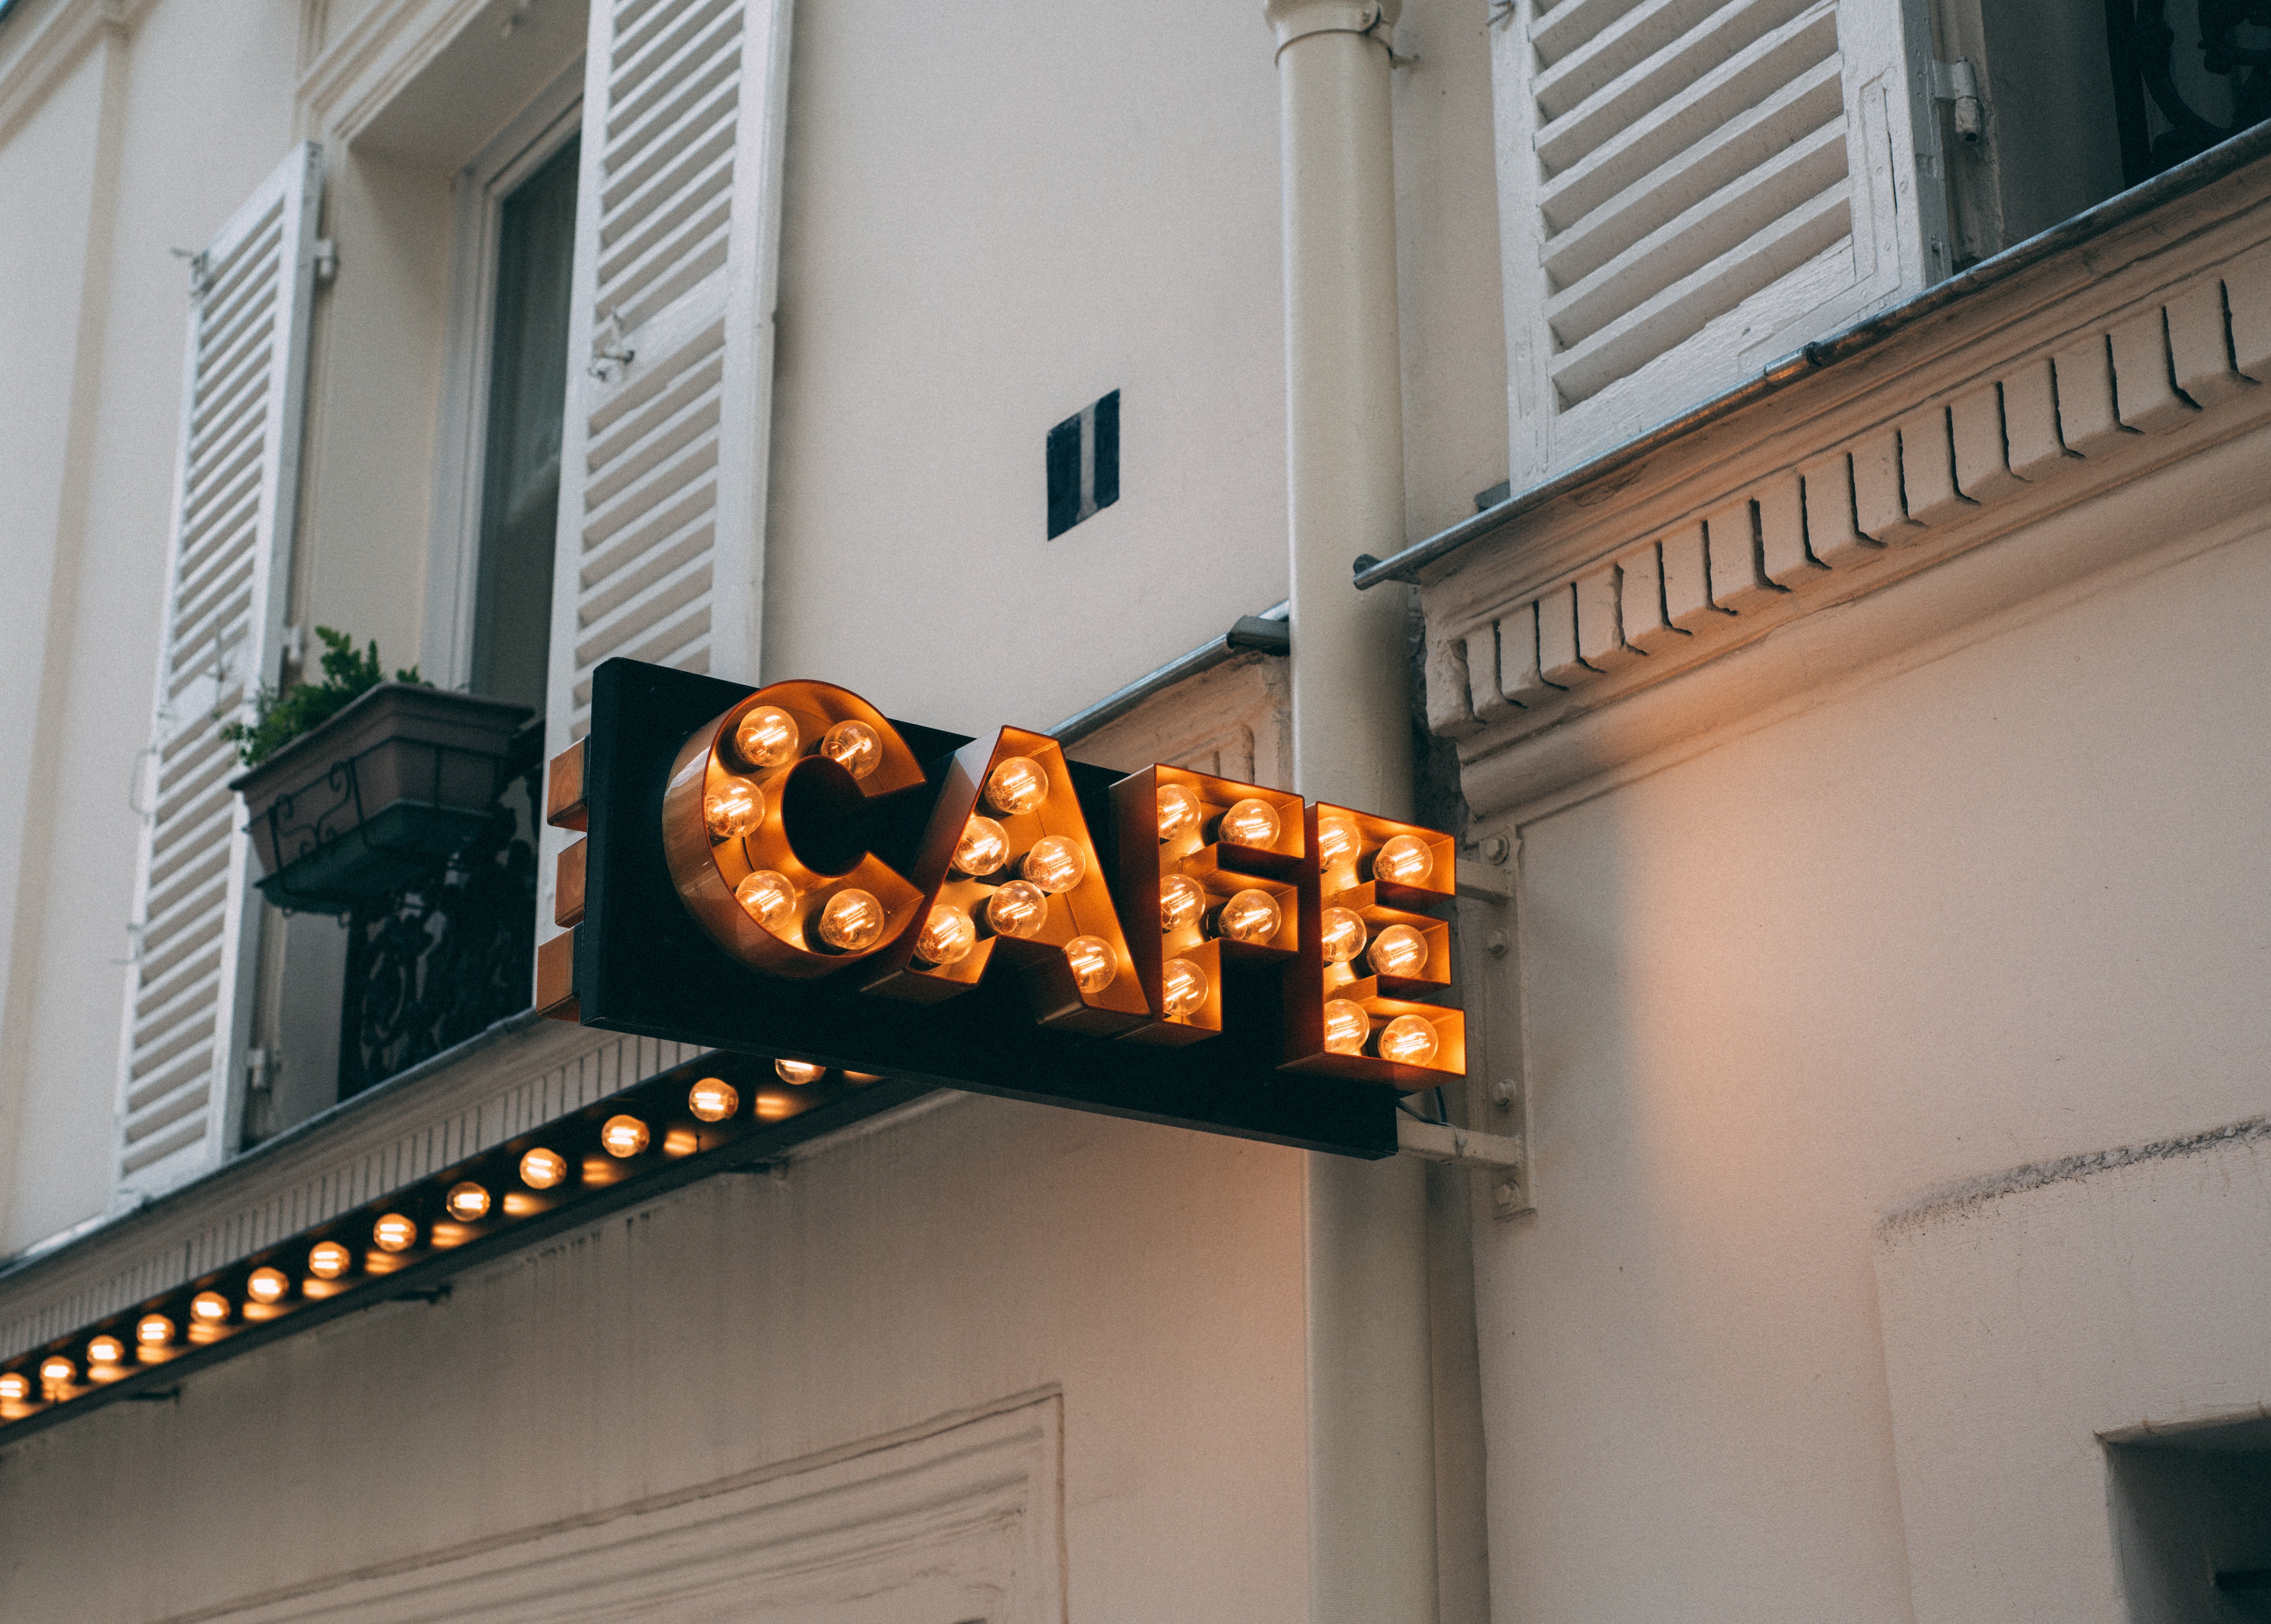 Calebs Cafe war einst sehr beliebt, bis die Konkurrenz in der Nähe auftauchte. | Quelle: Pexels